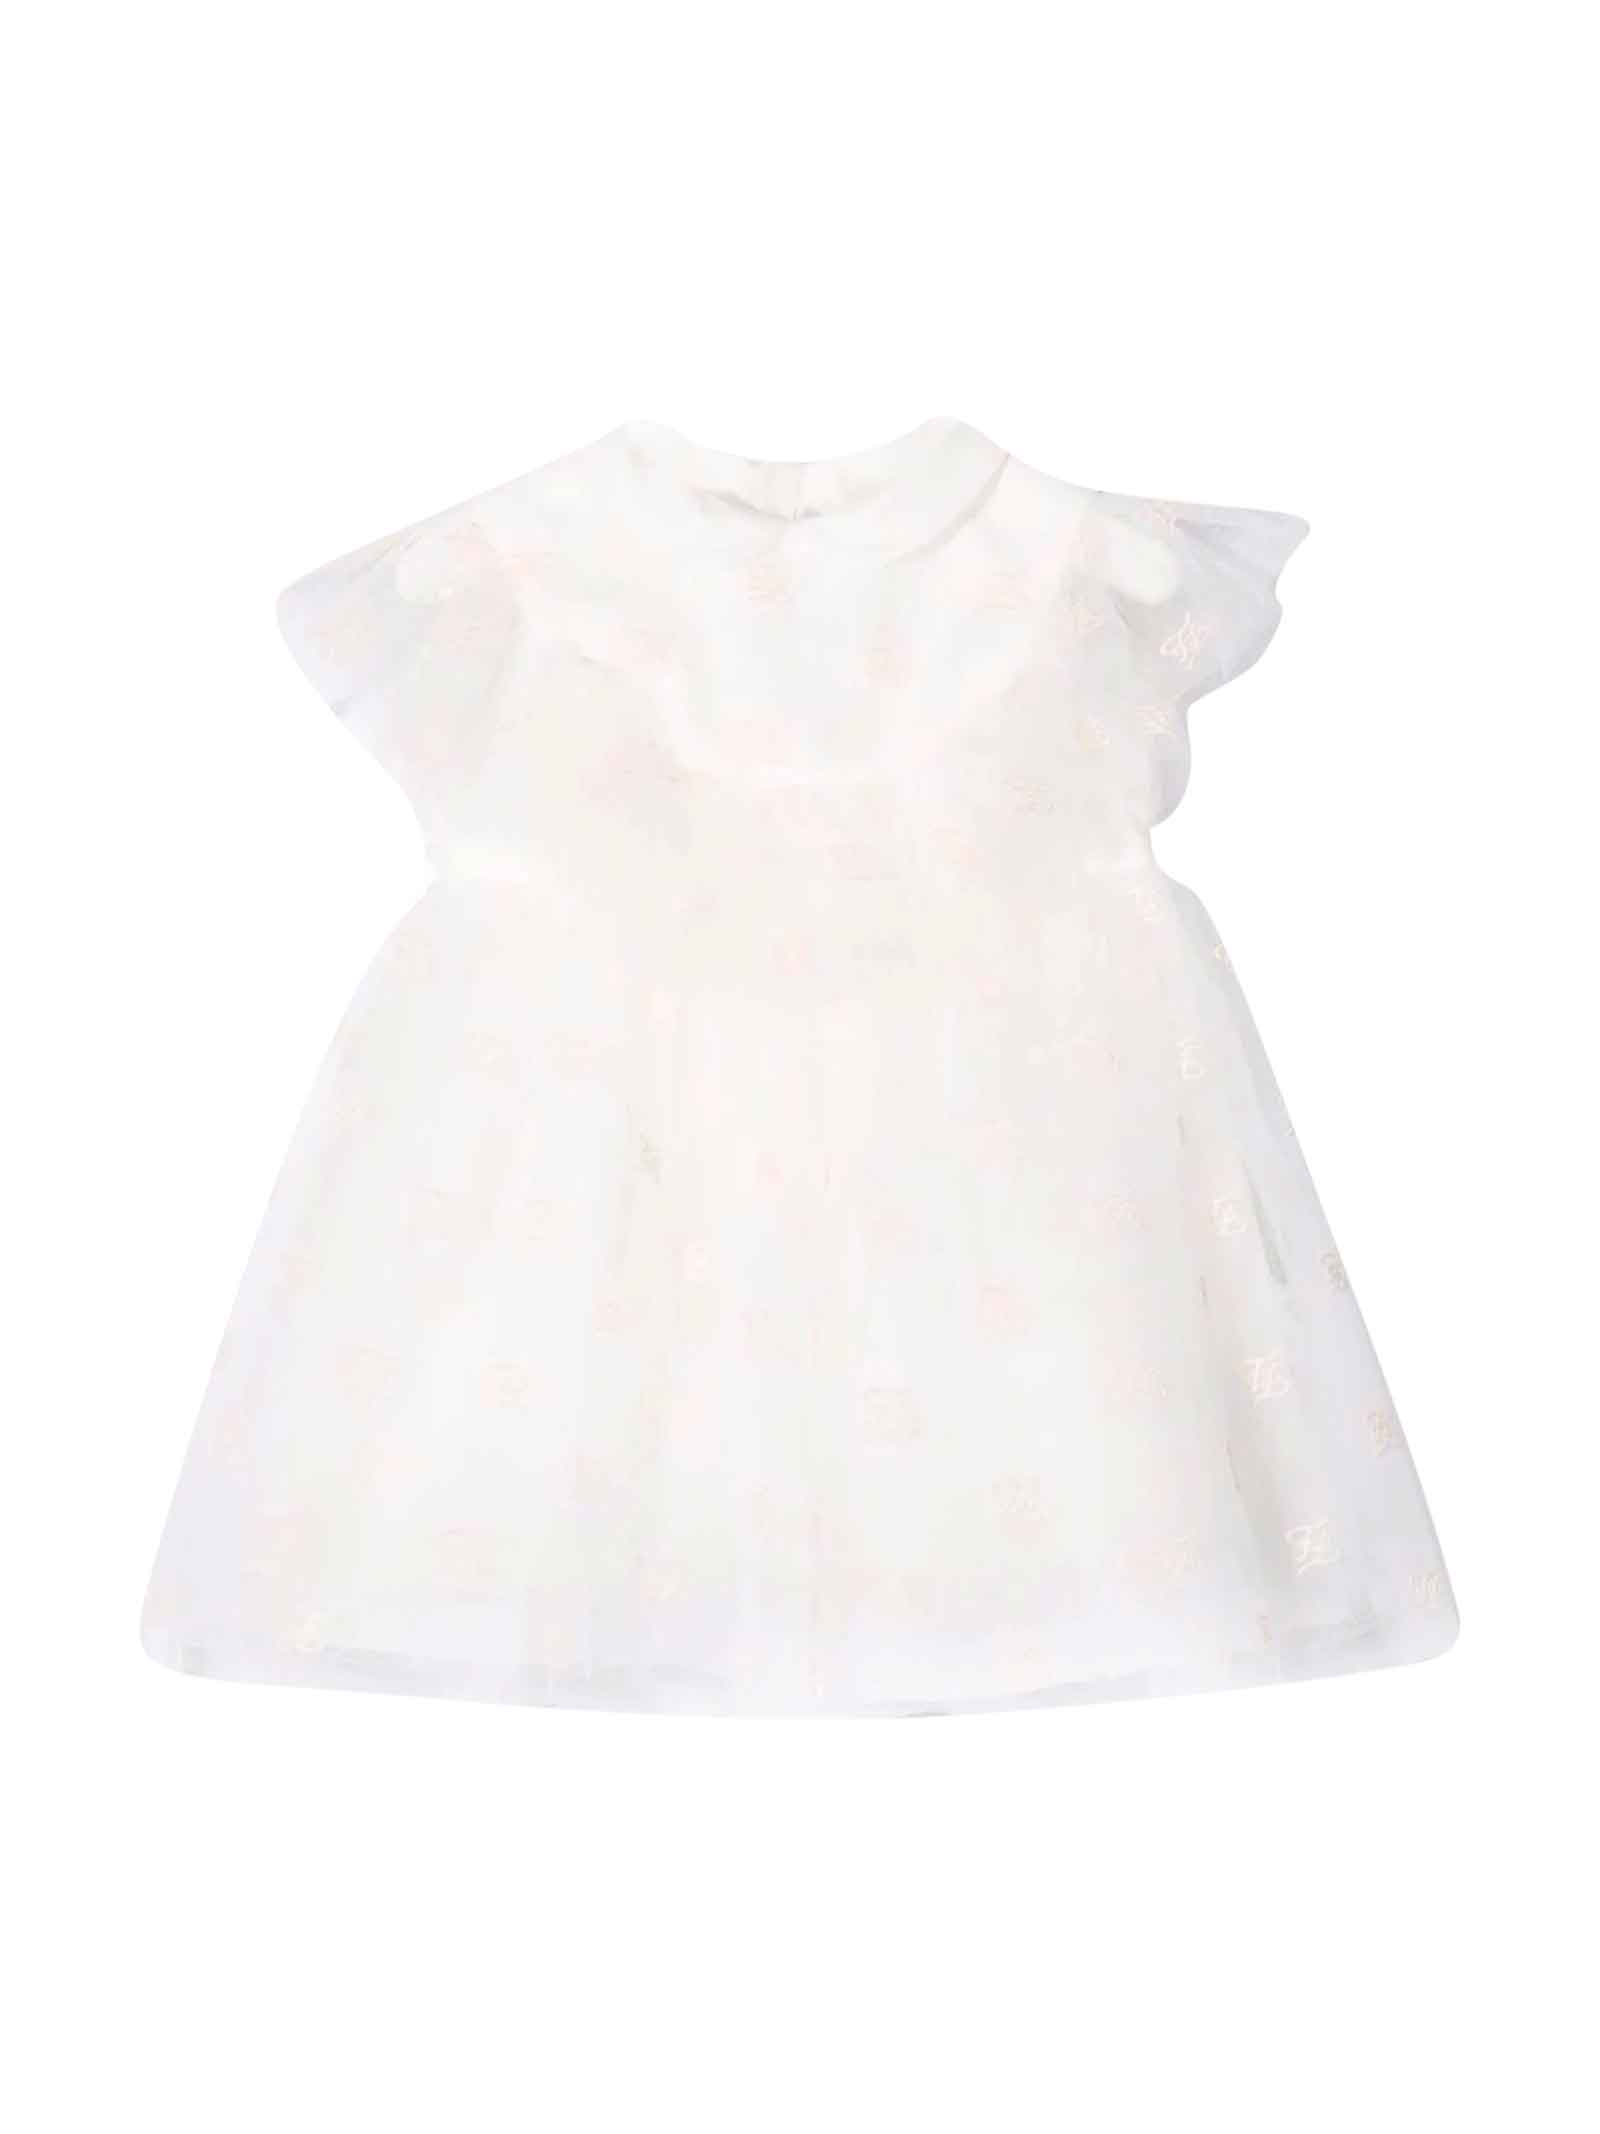 Fendi Newborn White Dress